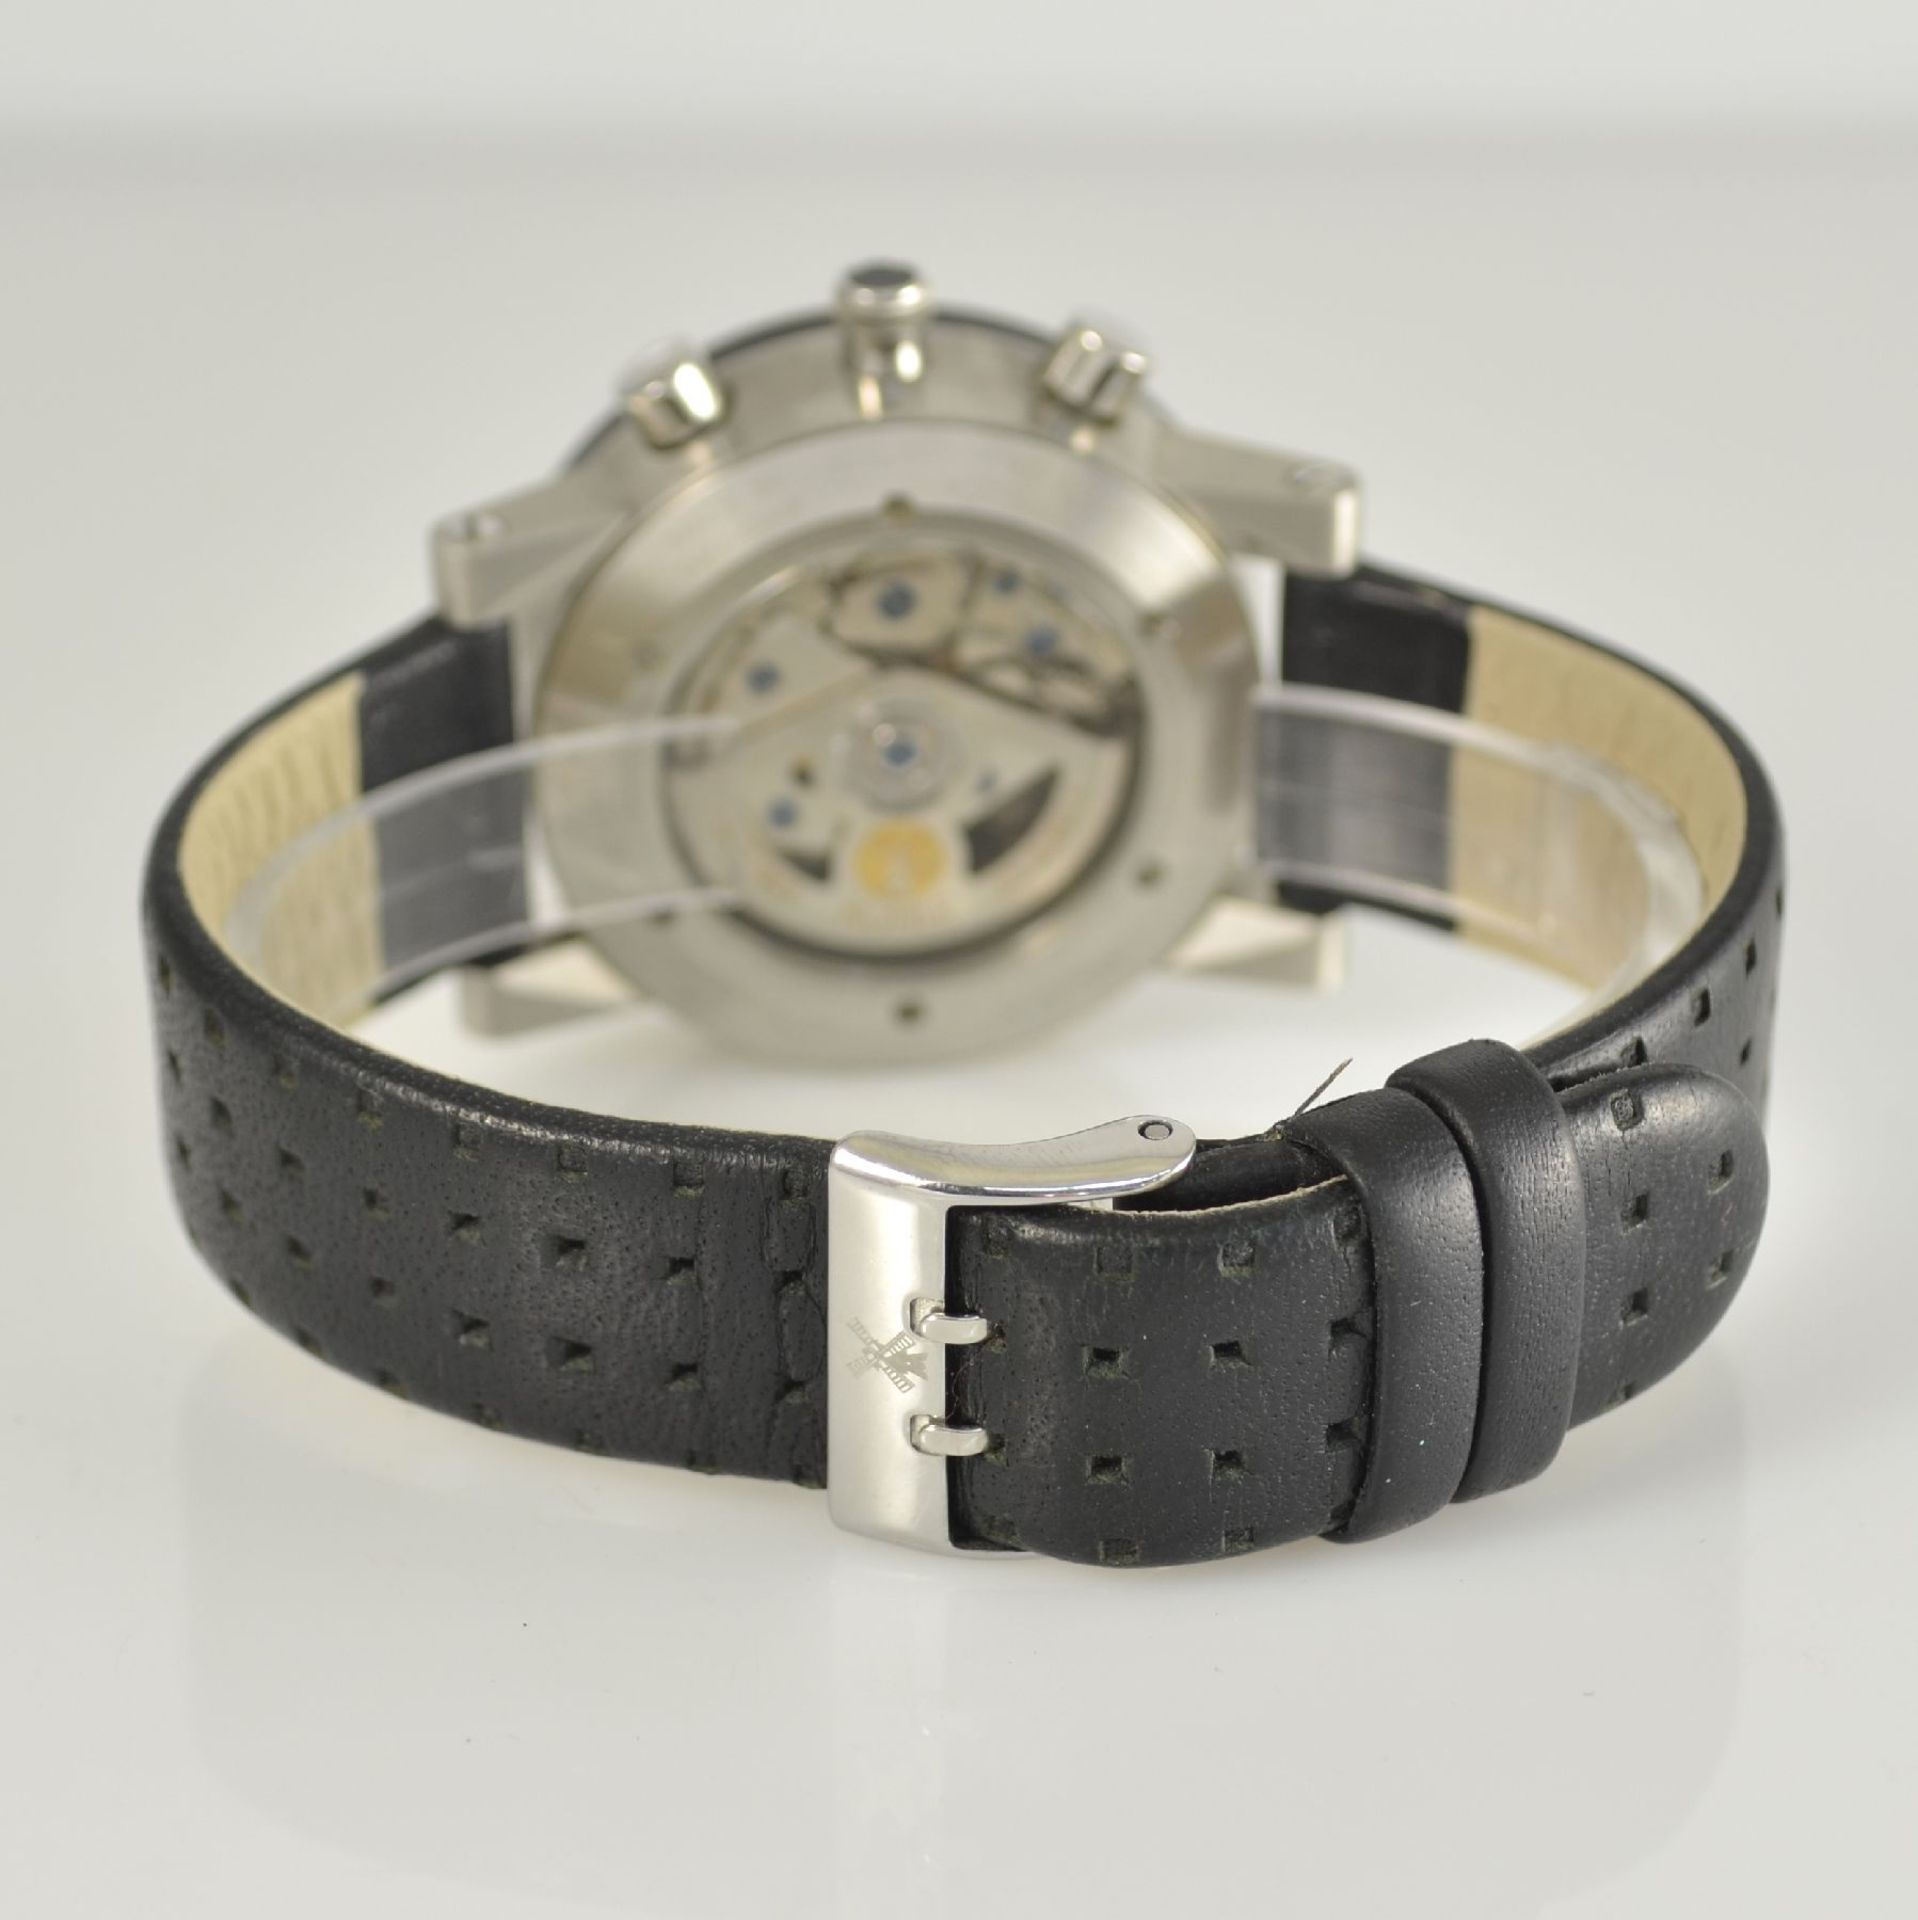 MÜHLE GLASHÜTTE Armbandchronograph in Stahl, Deutschland/Schweiz um 2005, Automatik, beids. vergl. - Bild 6 aus 9